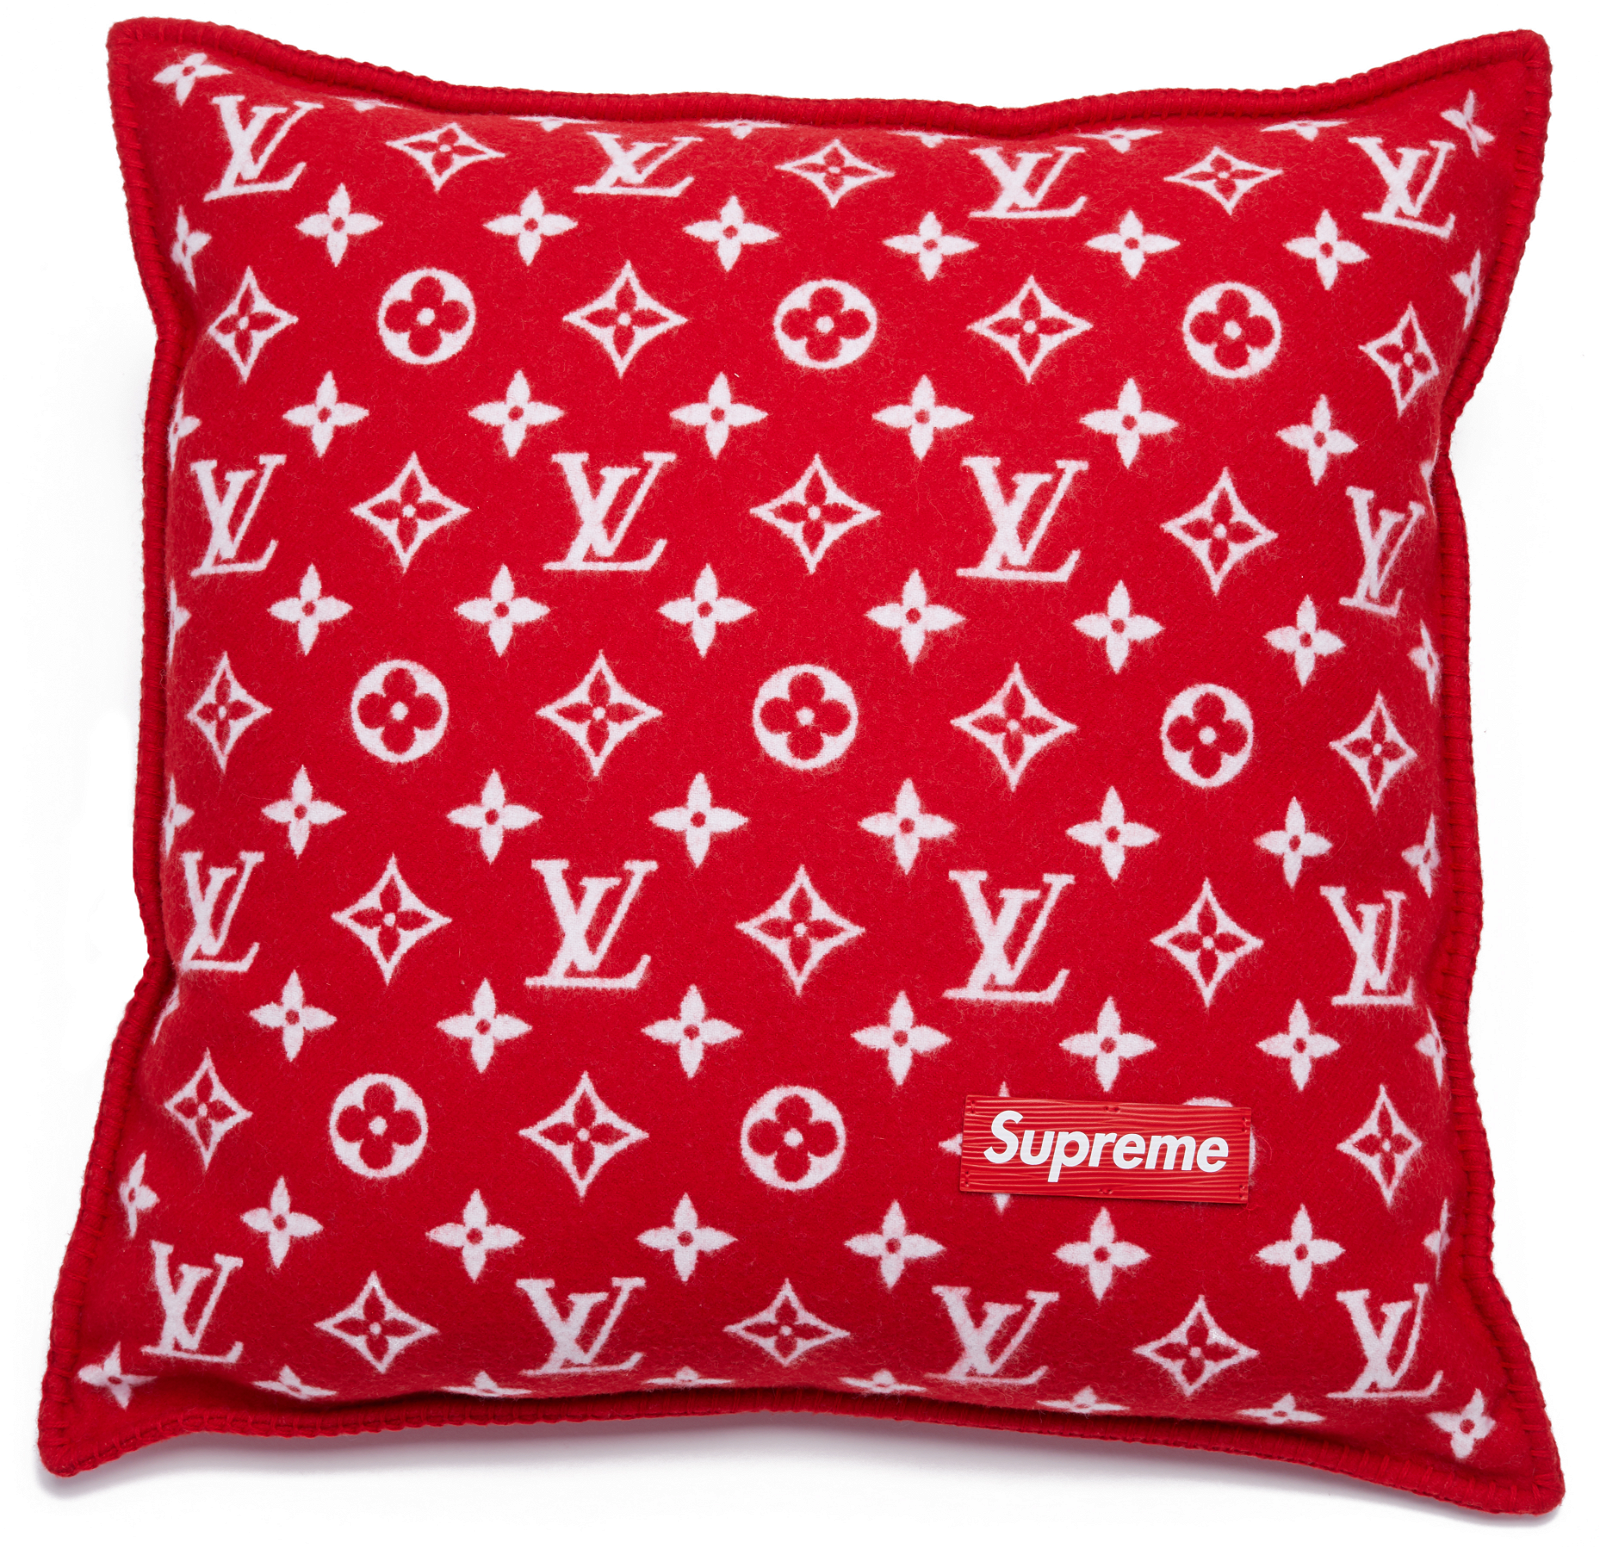 Supreme x Louis Vuitton Monogram Pillow Red streetwear